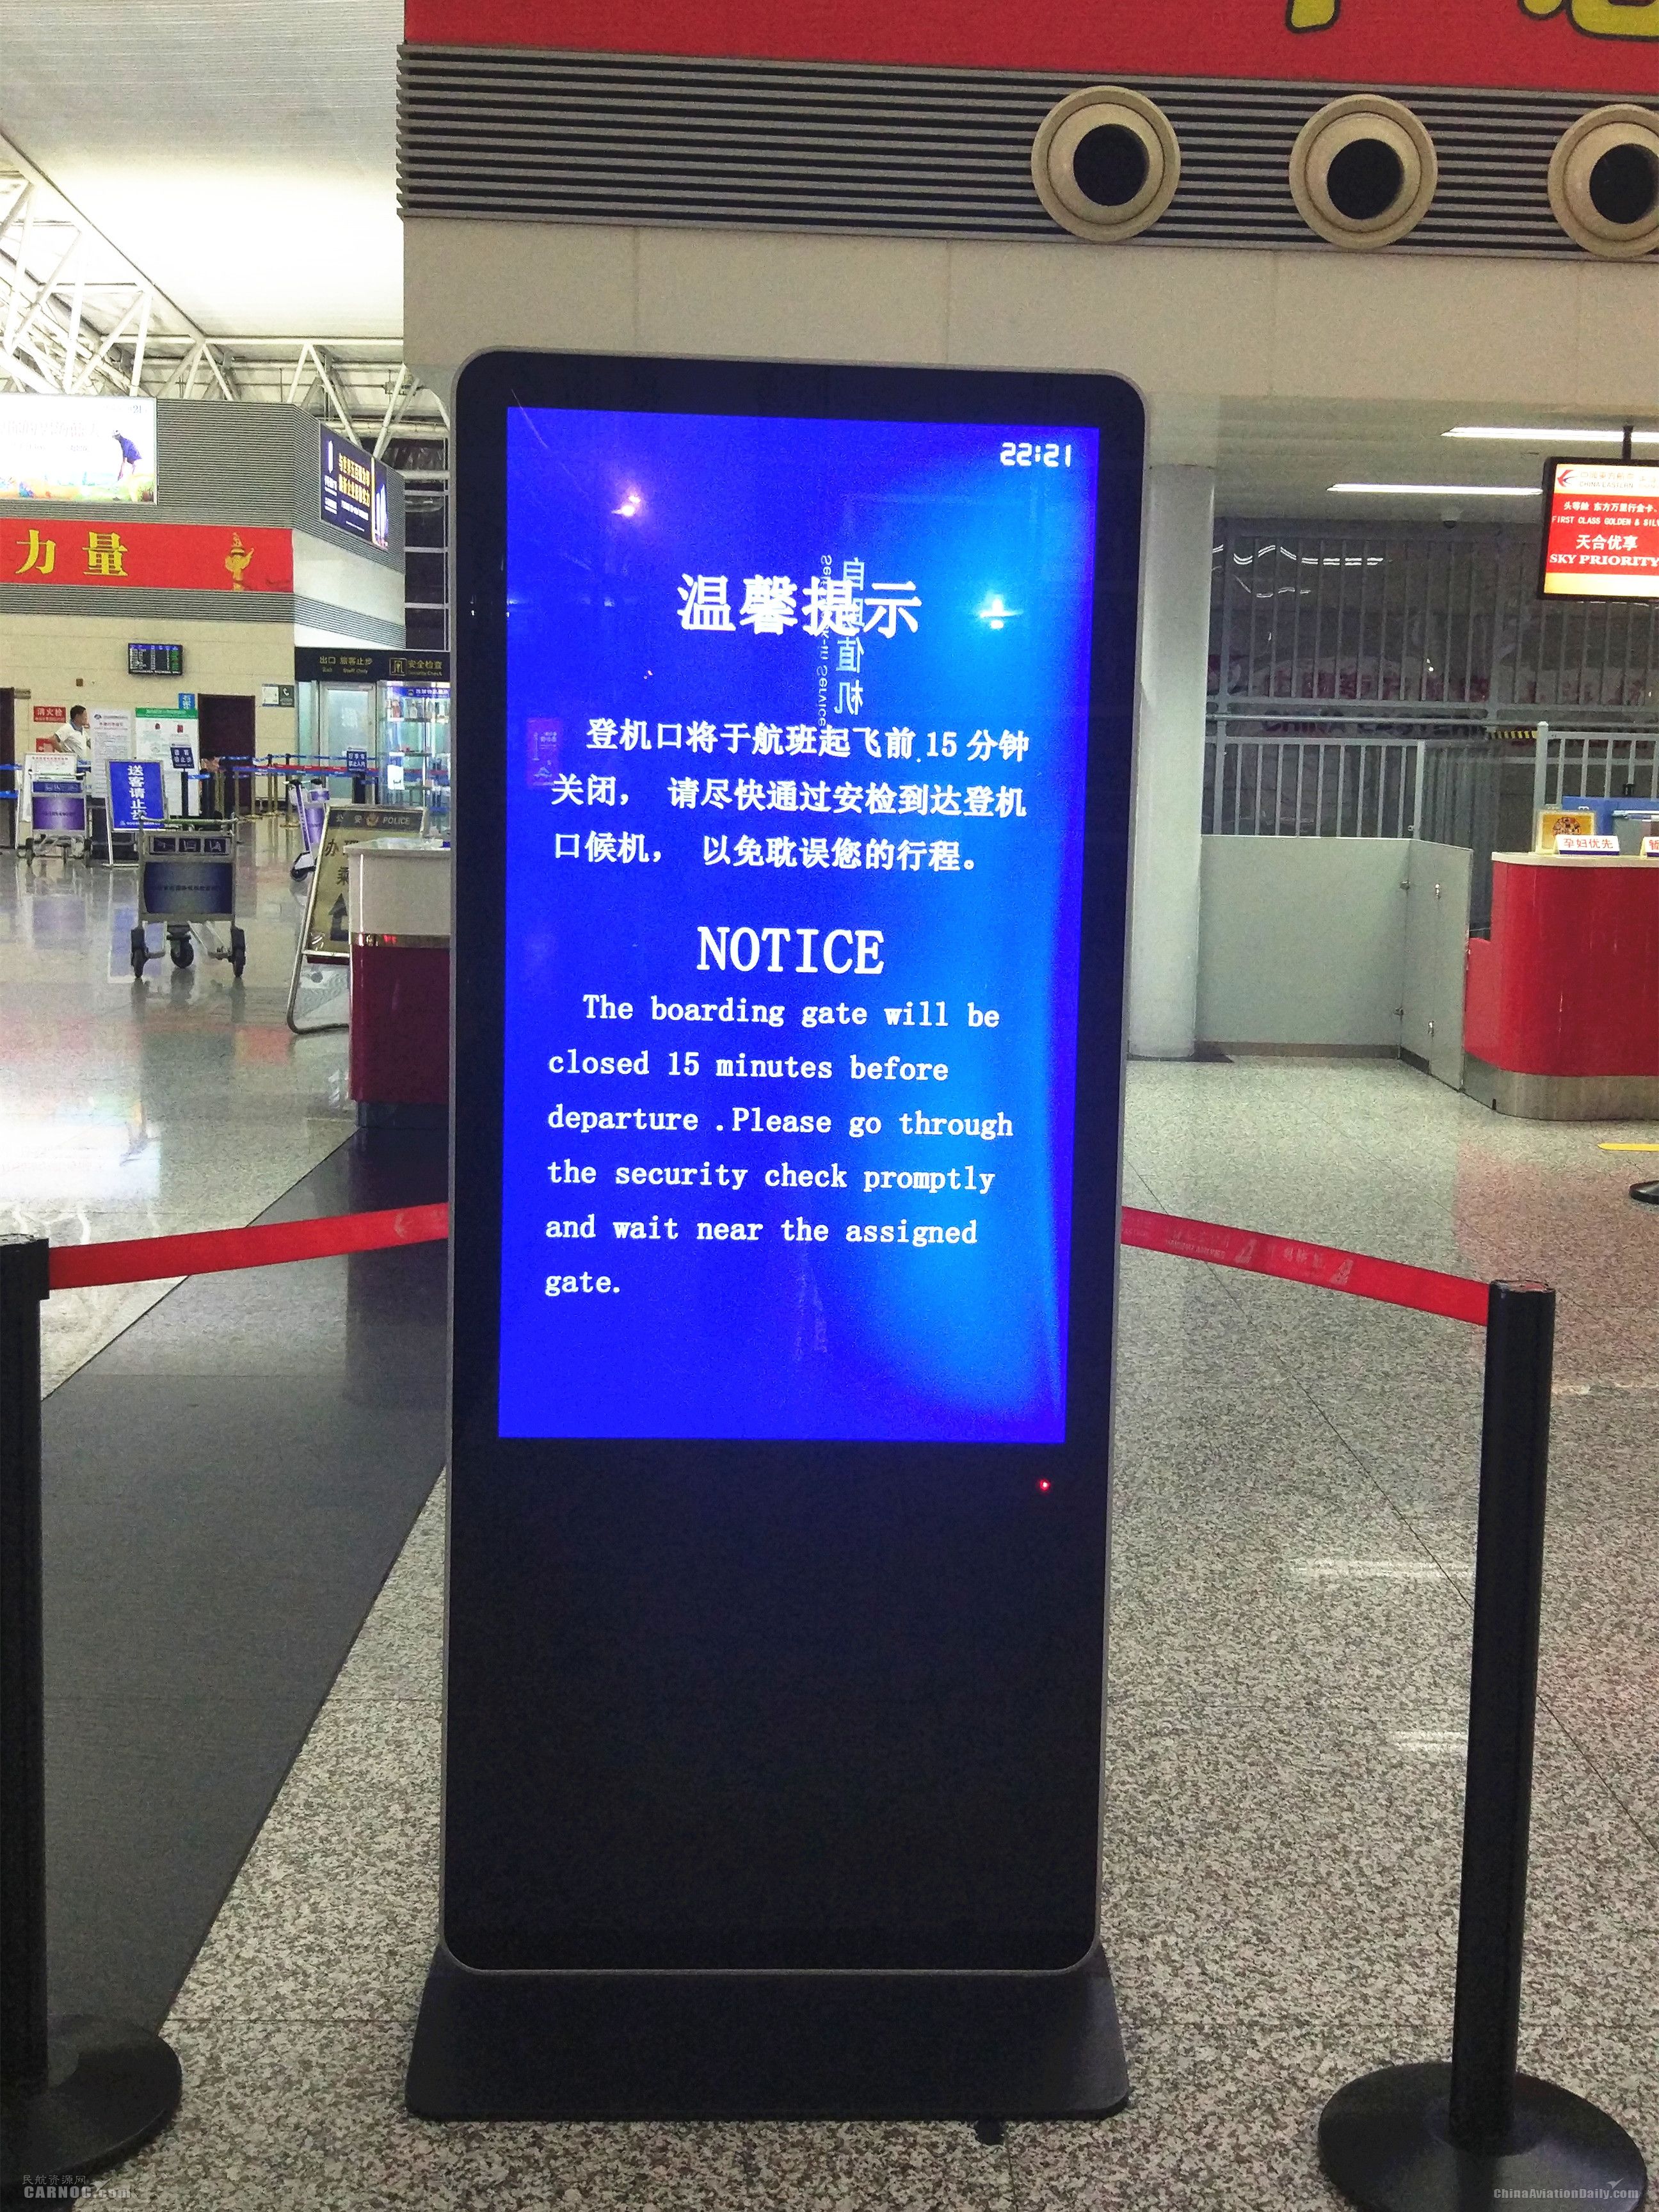 石家庄机场改善航站楼内服务设施(附图)